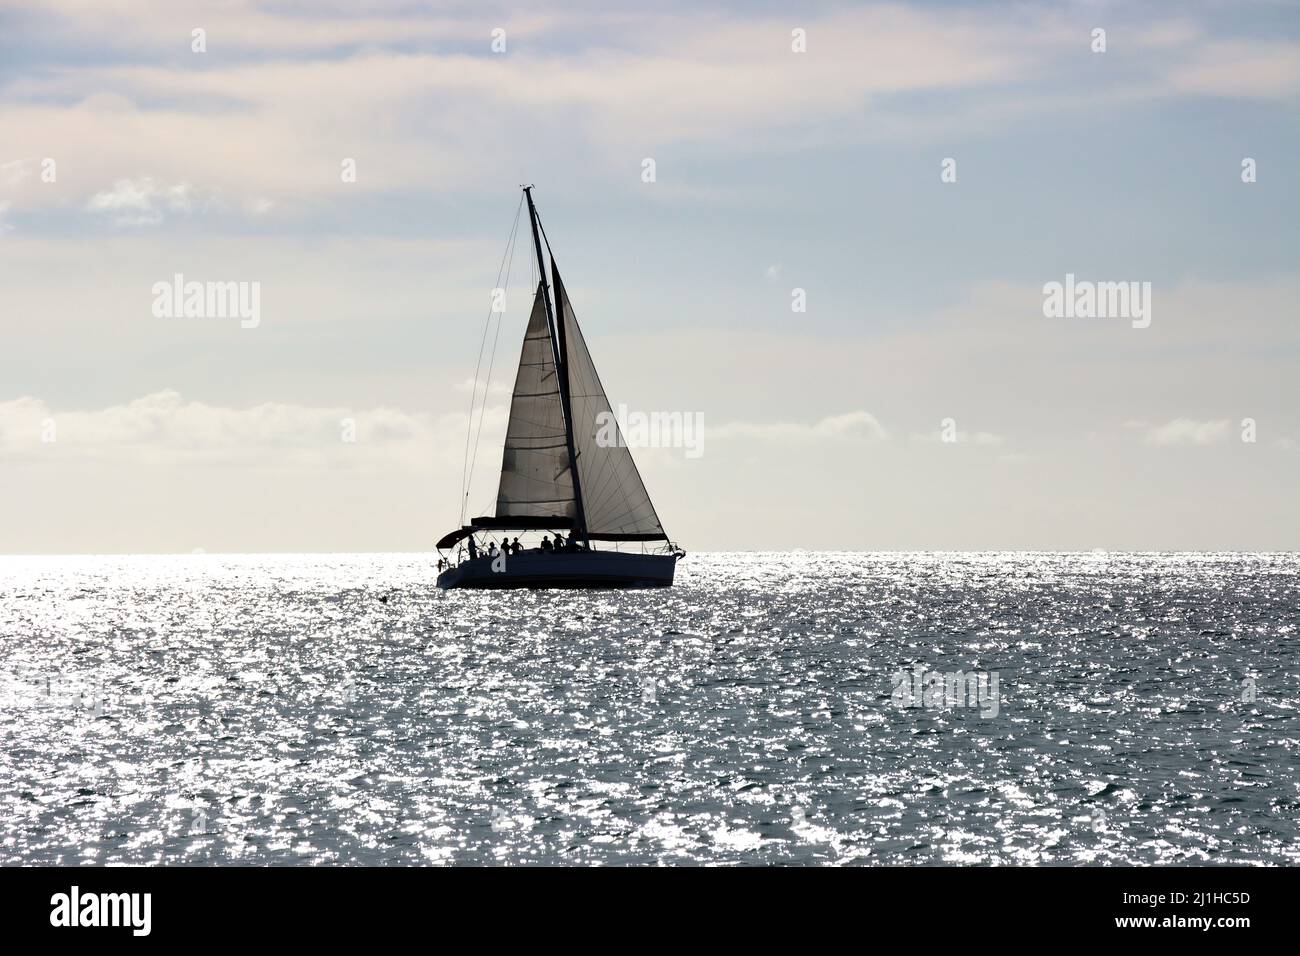 Segelschiff im Gegenlicht - Symbolbild für Freiheit und Fernweh, Jandia Playa, Fuerteventura, Spanien Stock Photo